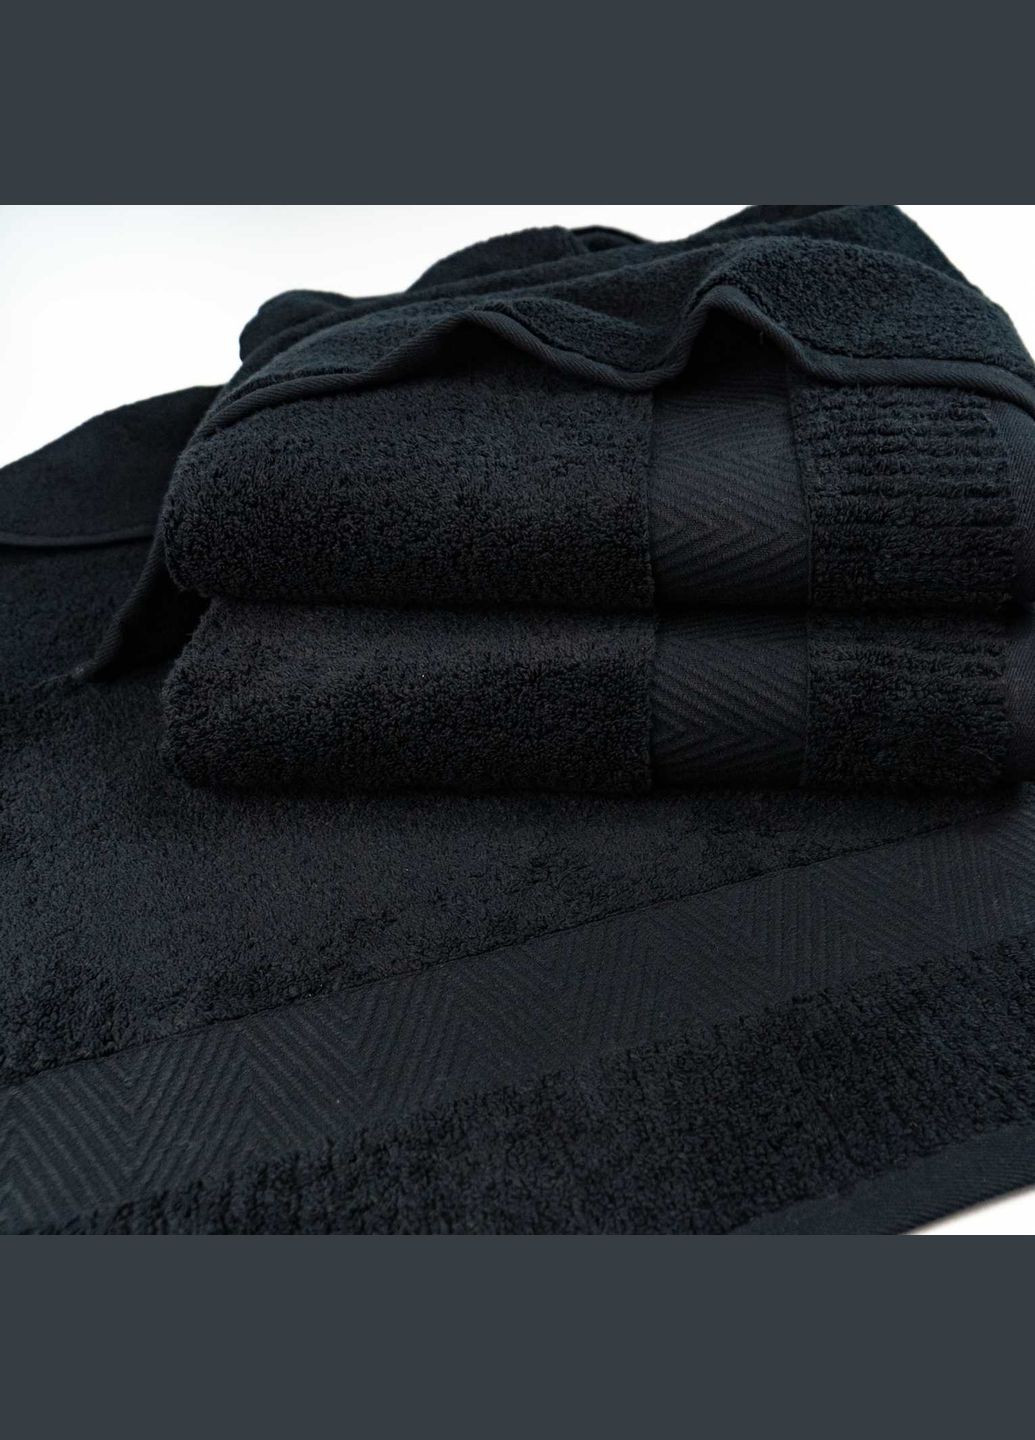 GM Textile набор махровых полотенец зеро твист бордюр 2шт 50x90см, 70x140см 550г/м2 () черный производство -